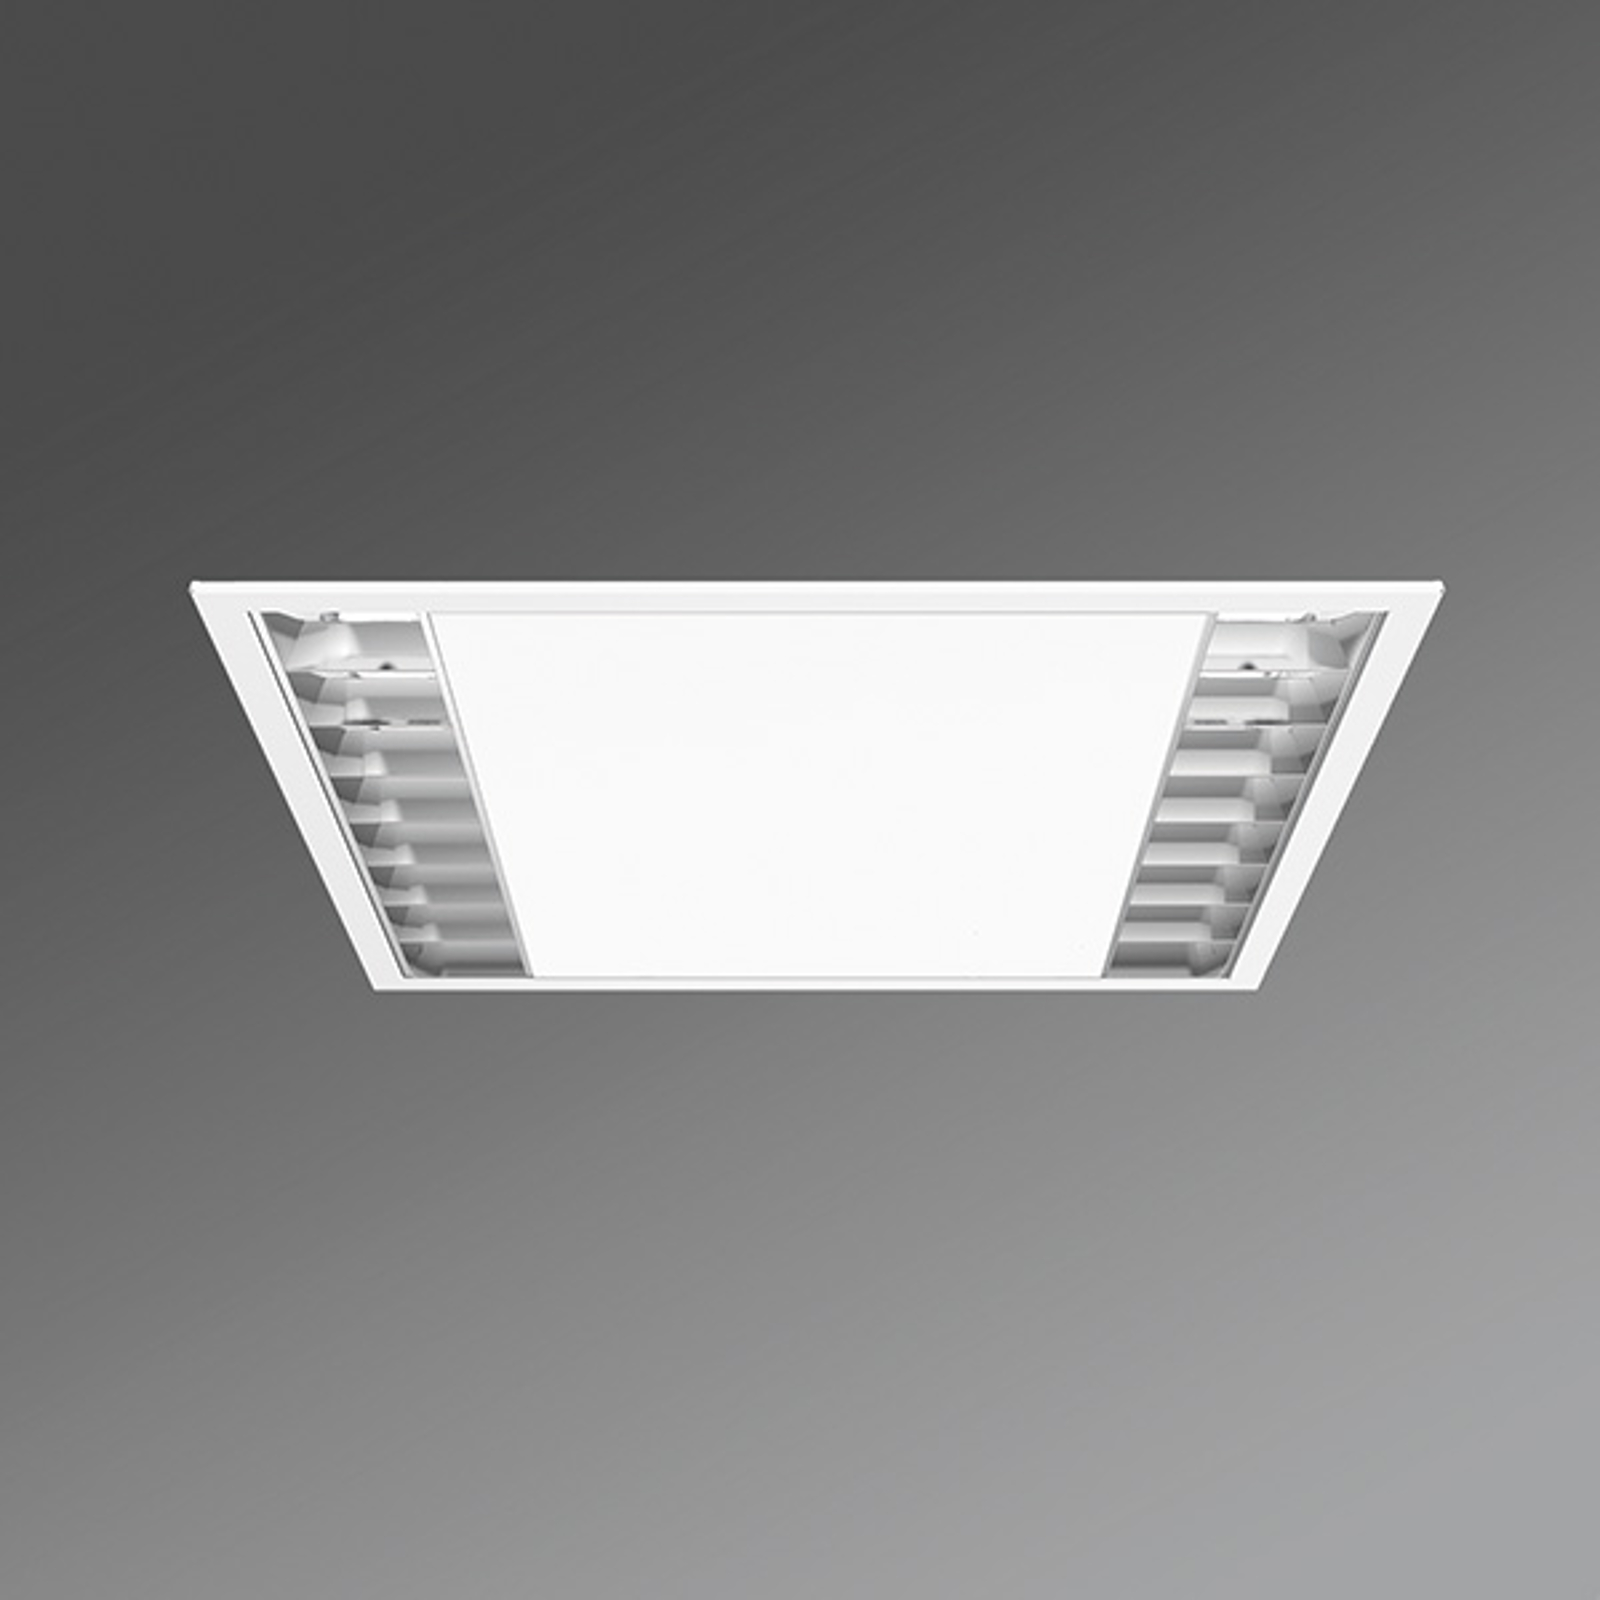 LED-toimisto-kattouppovalo UEX/625 parabolinen